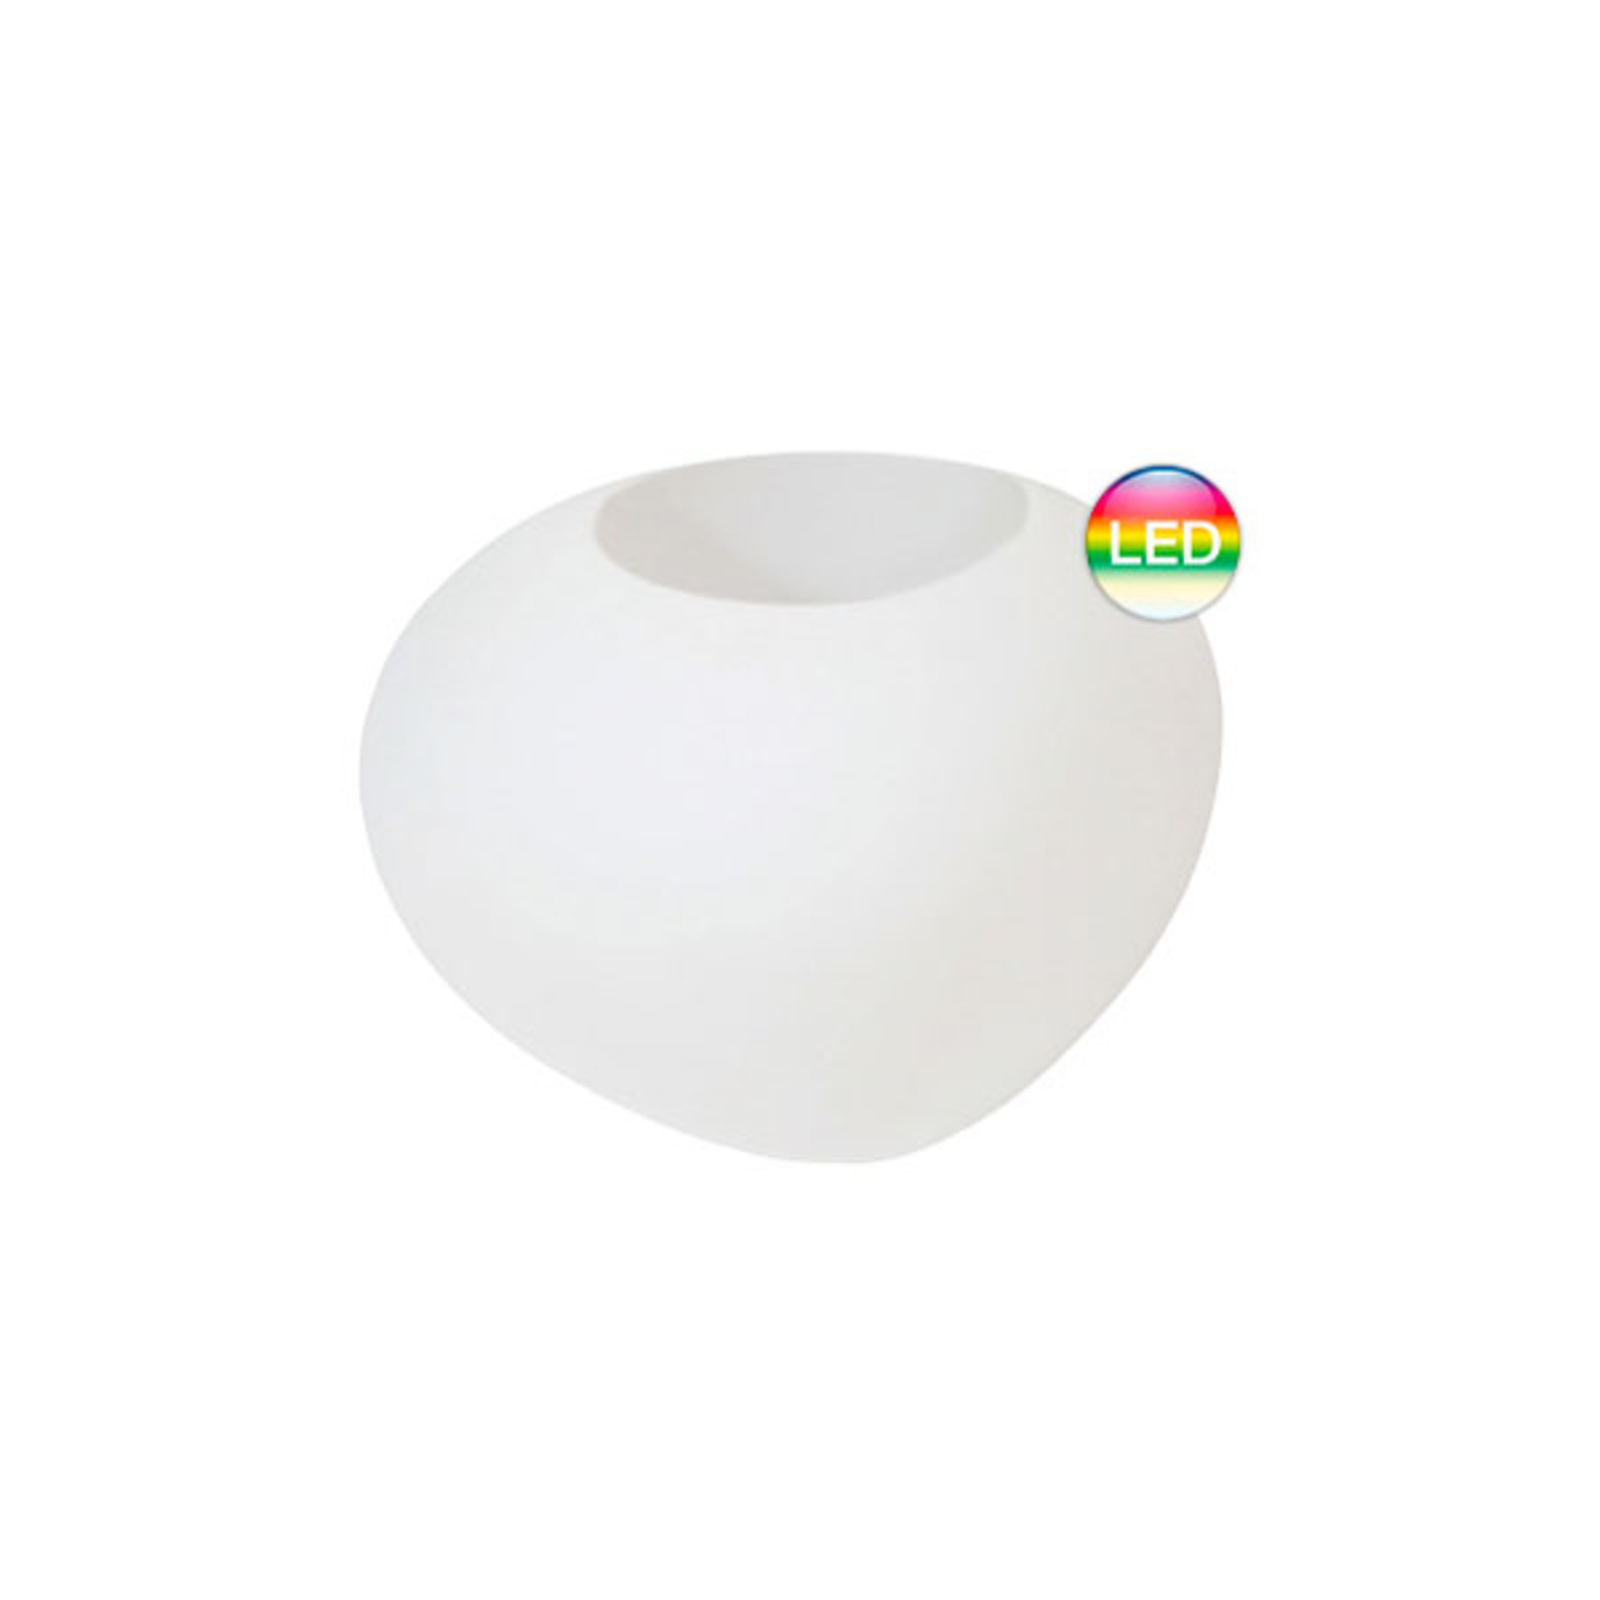 Lampa dekoracyjna Storus VII LED RGBW, biała z możliwością instalacji